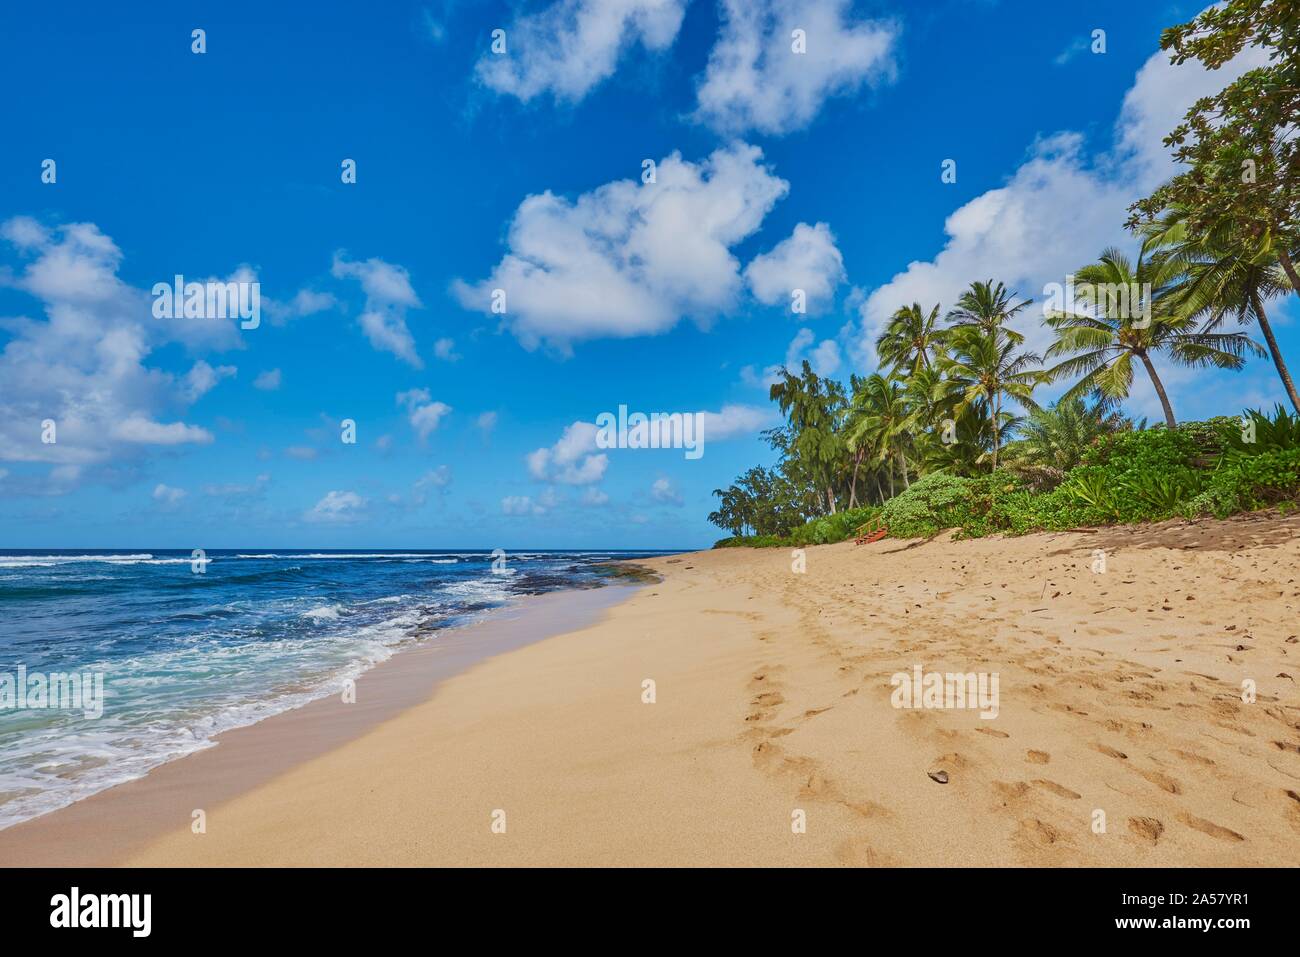 Landsape of the Sunset Beach on Oahu, North Shore, Hawaiian Island Oahu, Oahu, Hawaii, Aloha State, United States Stock Photo